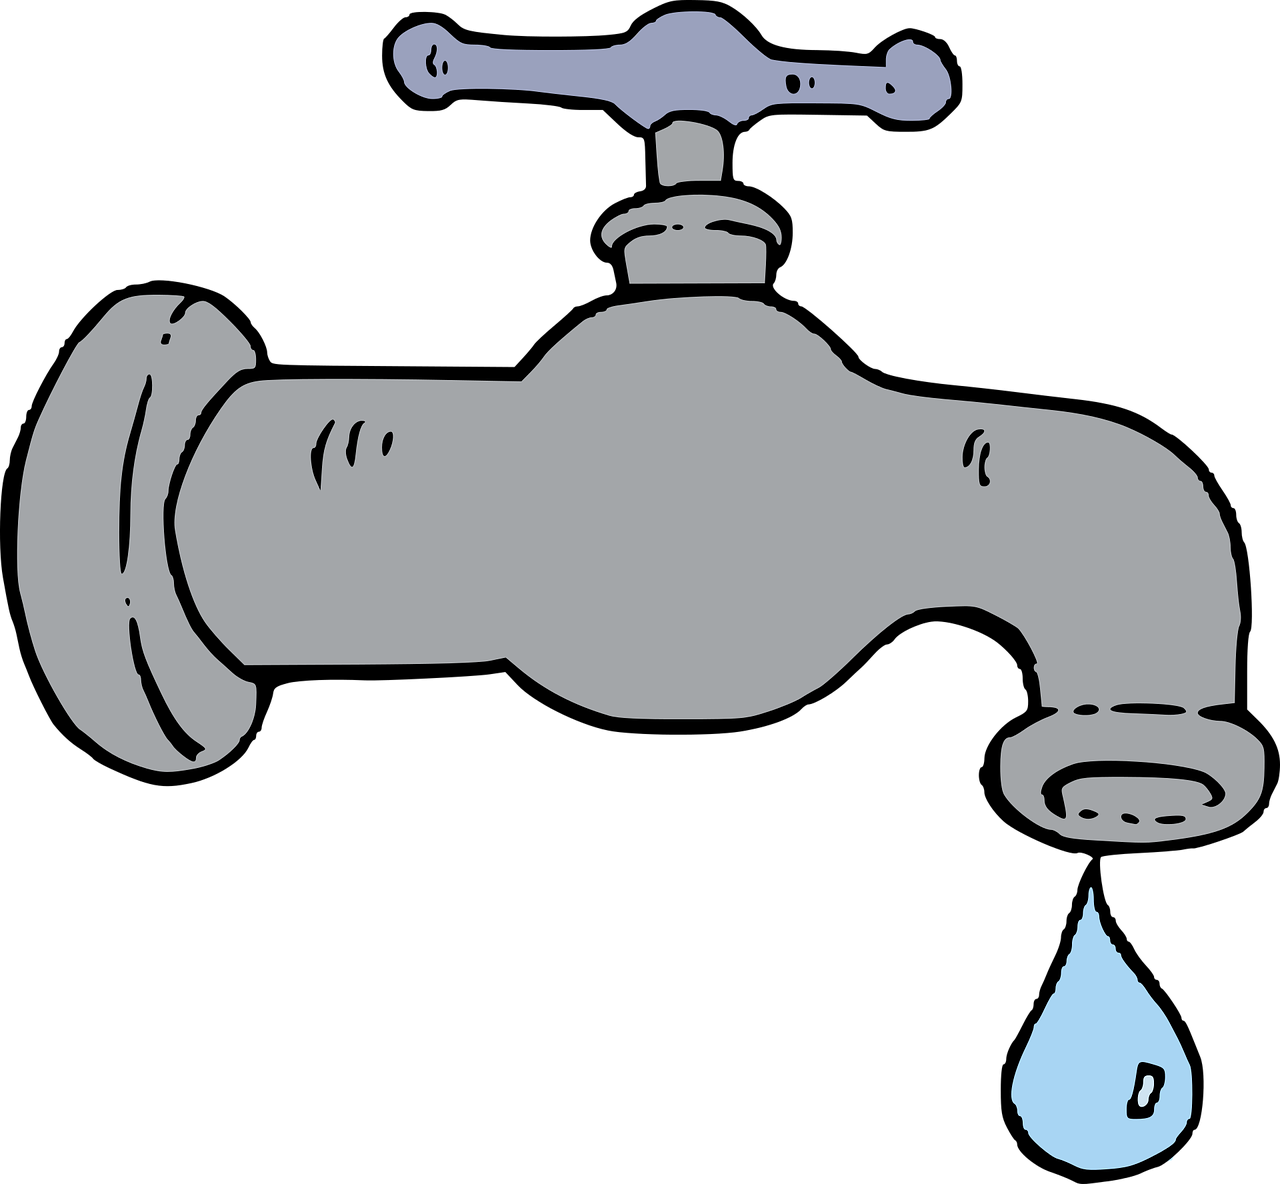 Кран водопроводный. Кран водопроводный для детей. Водопроводный кран с водой. Кран рисунок.